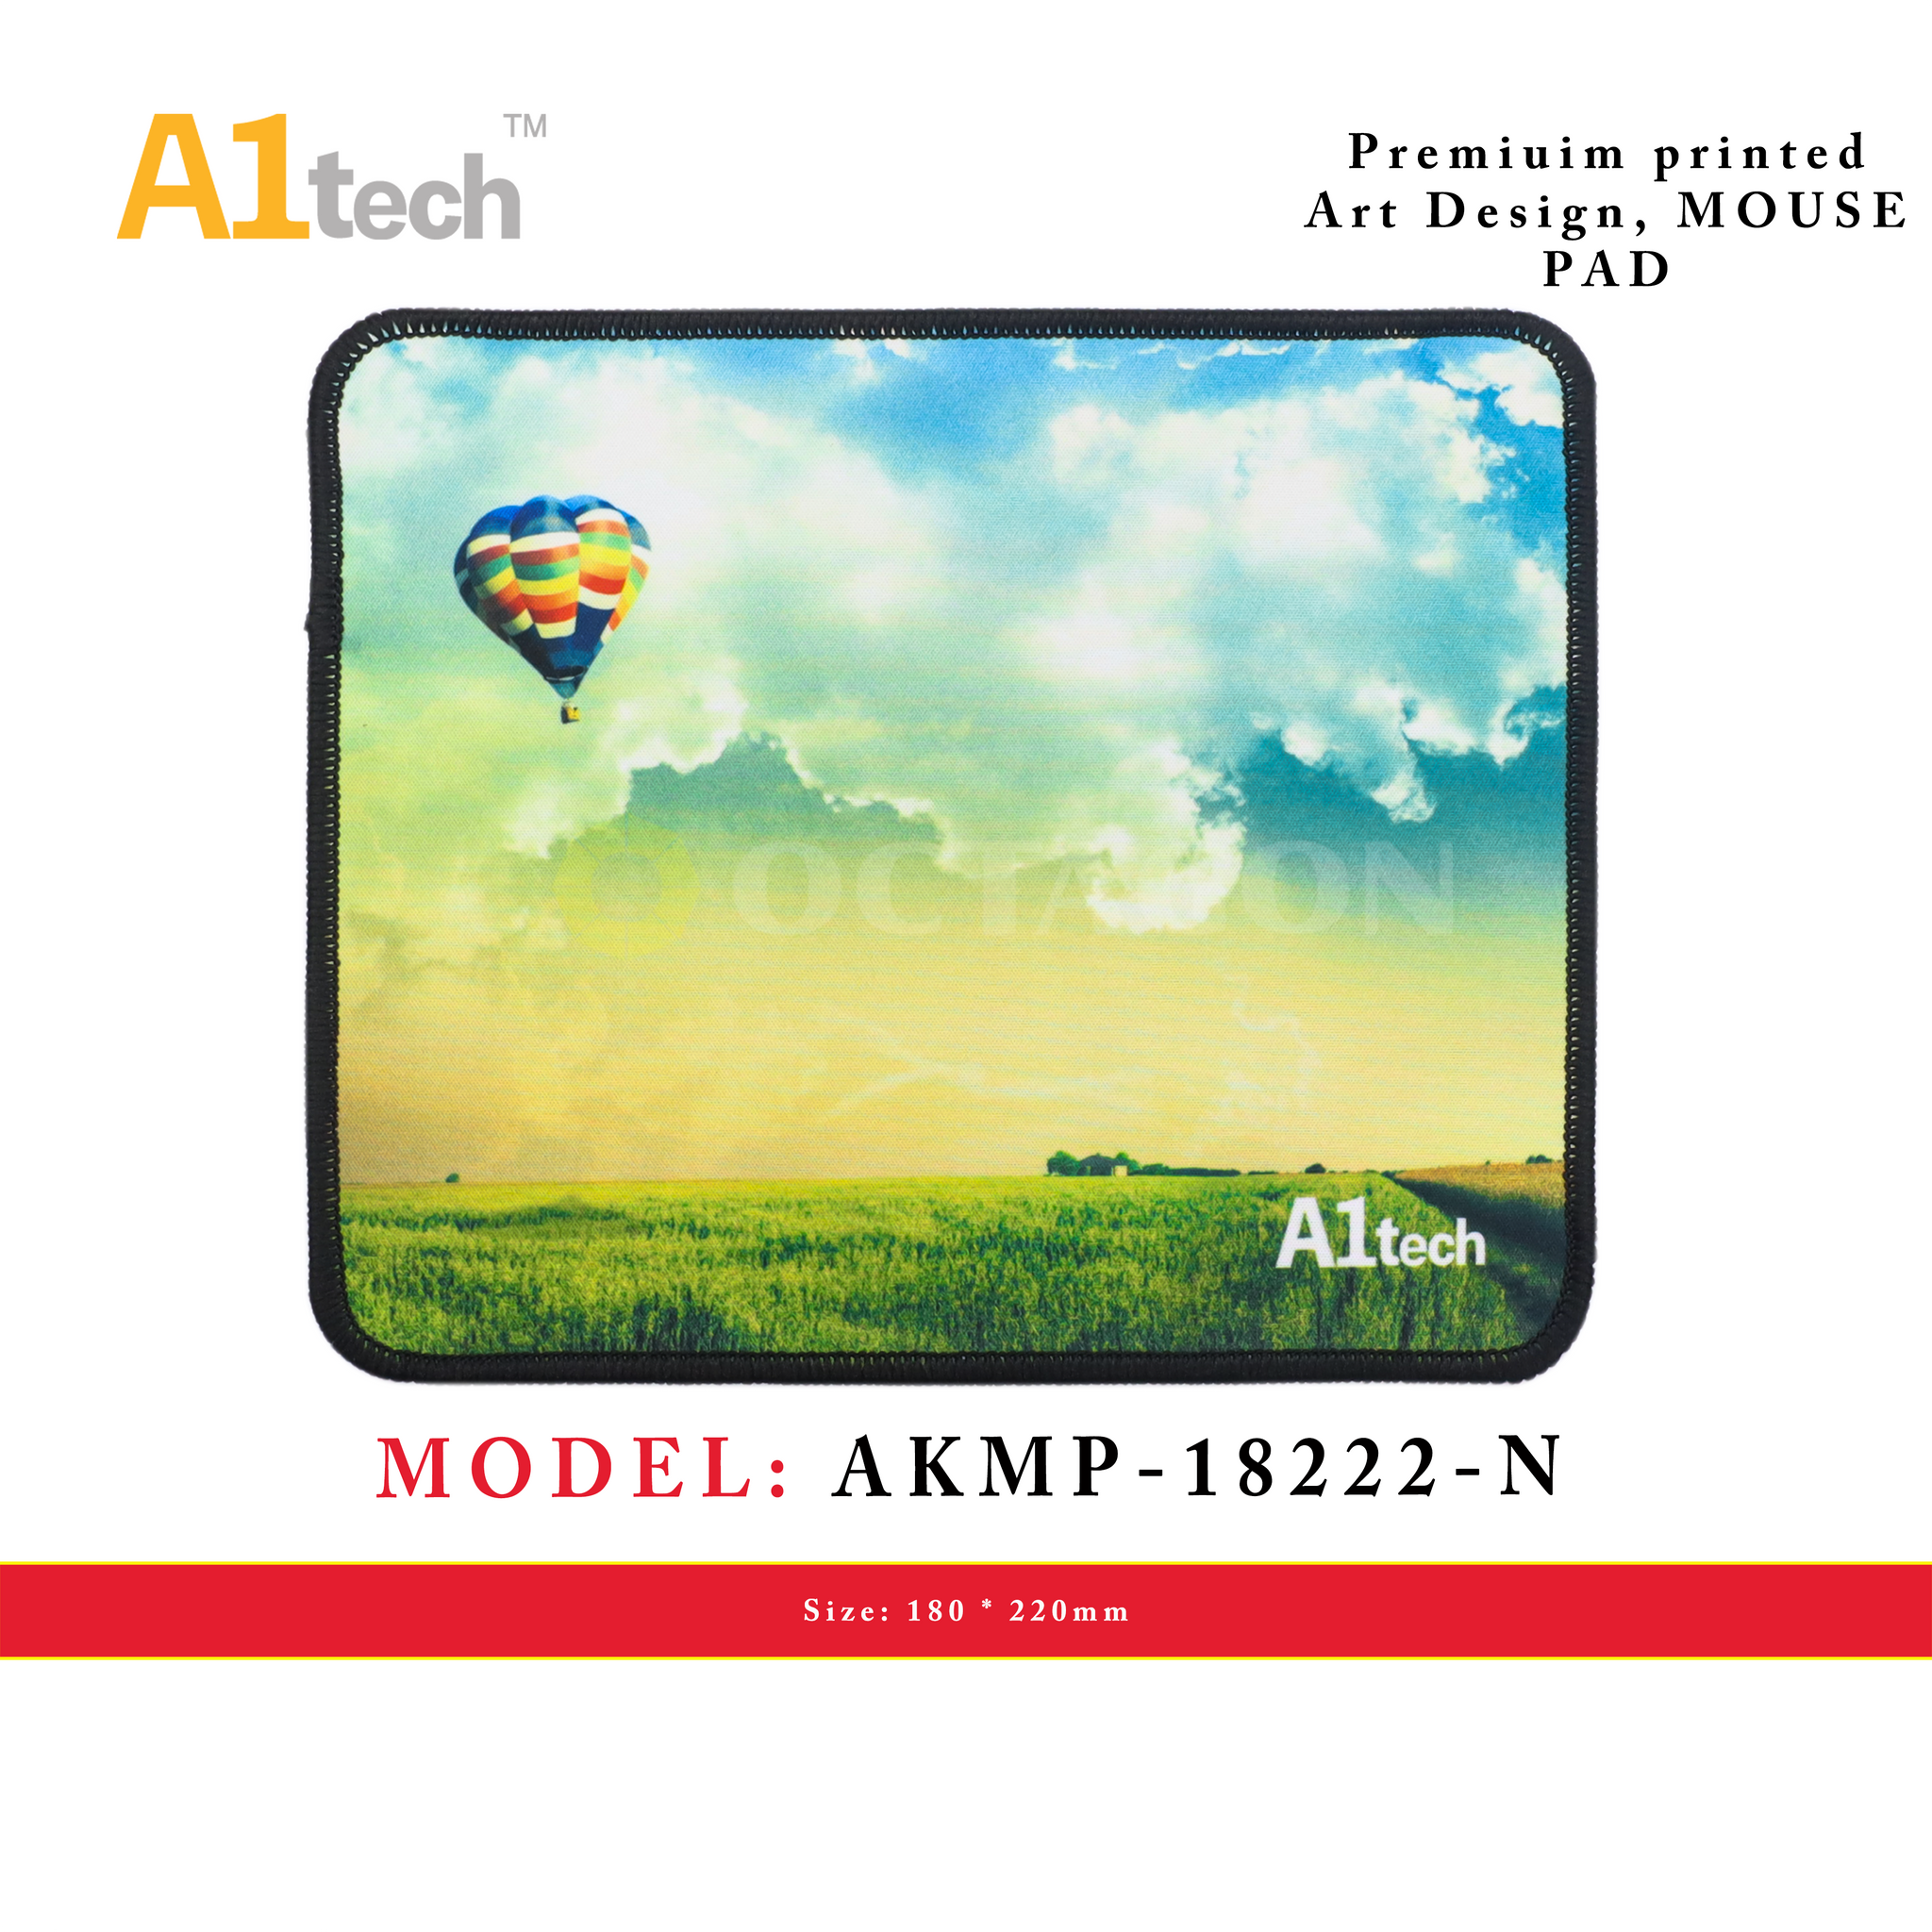 A1TECH AKMP-18222-N MOUSE PAD